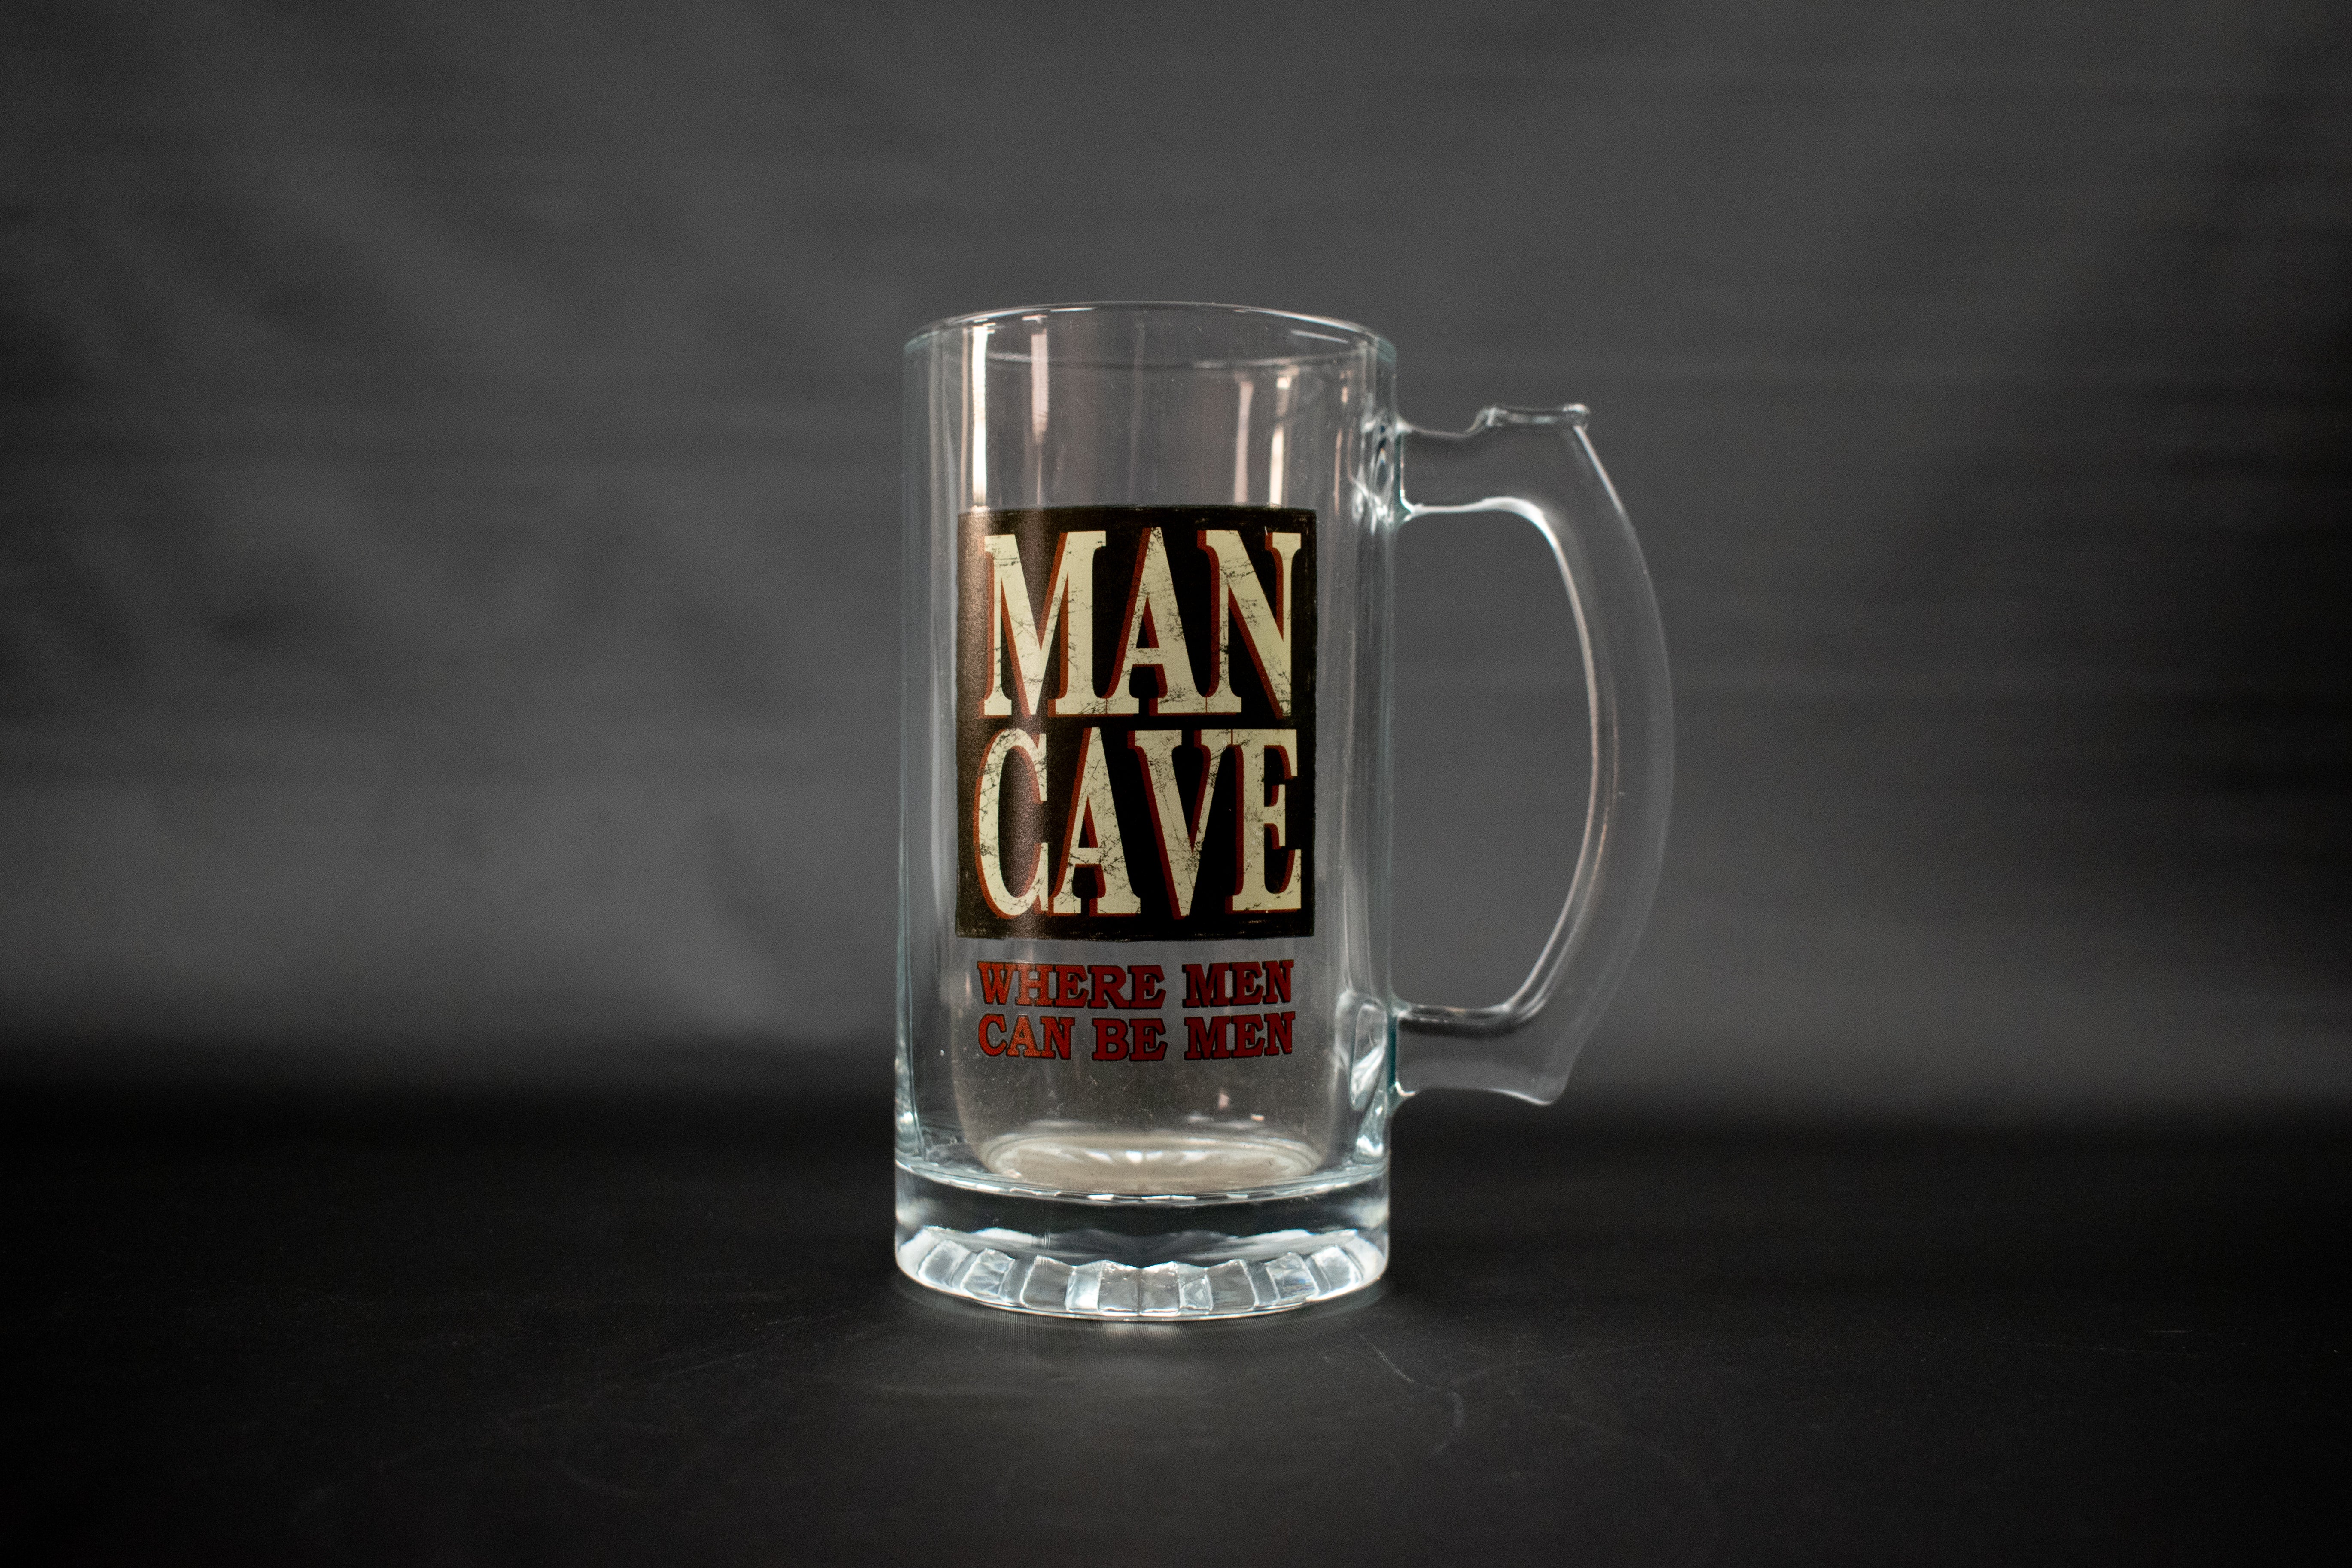 Man Cave where Men Can be men Beer mug 6 Inch glass beer mug